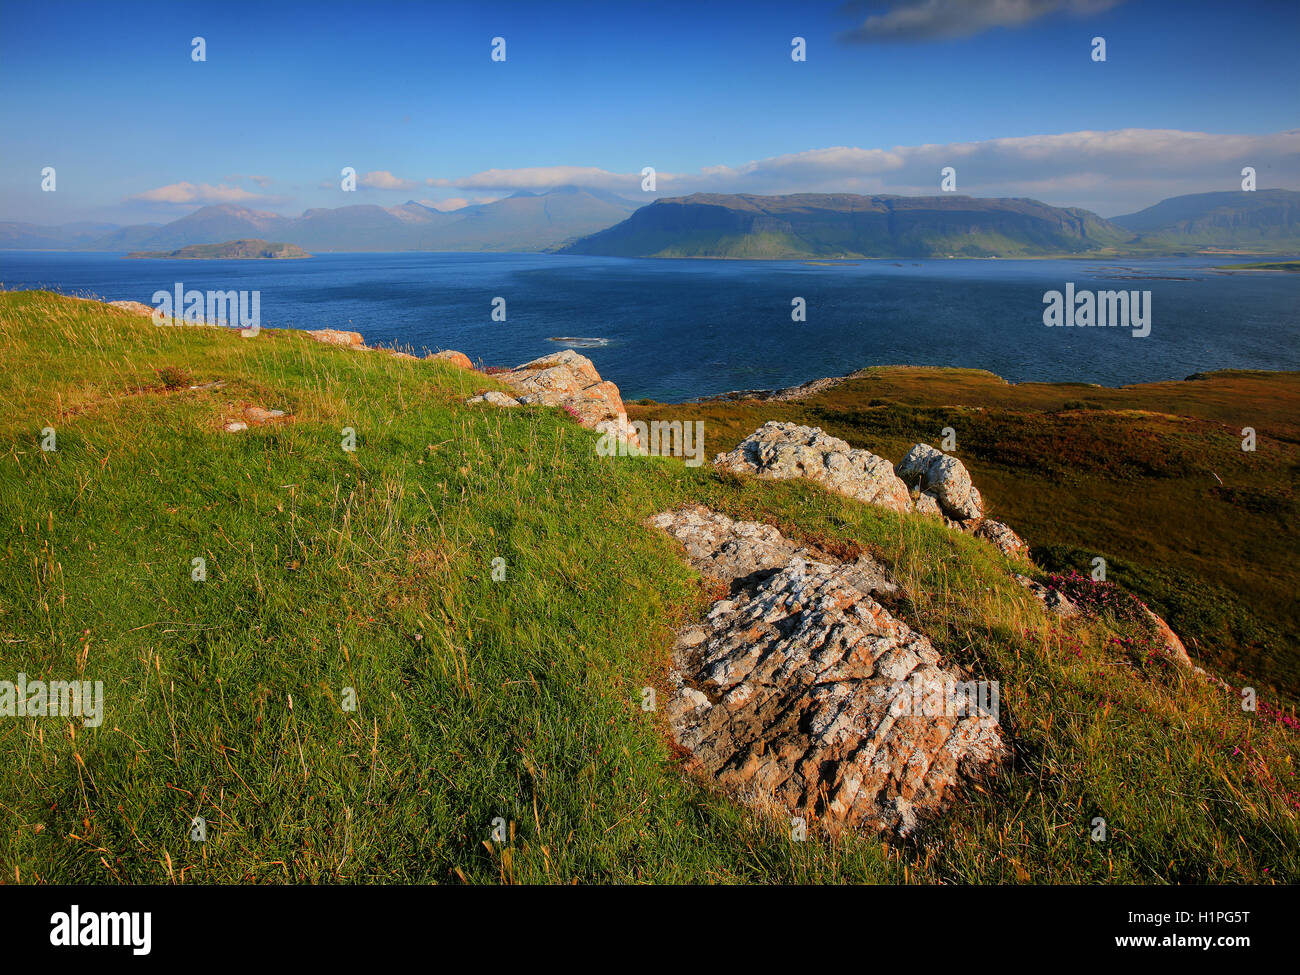 La Isla de Mull desde la isla de Ulva, Loch Na Keal, Argyll Foto de stock